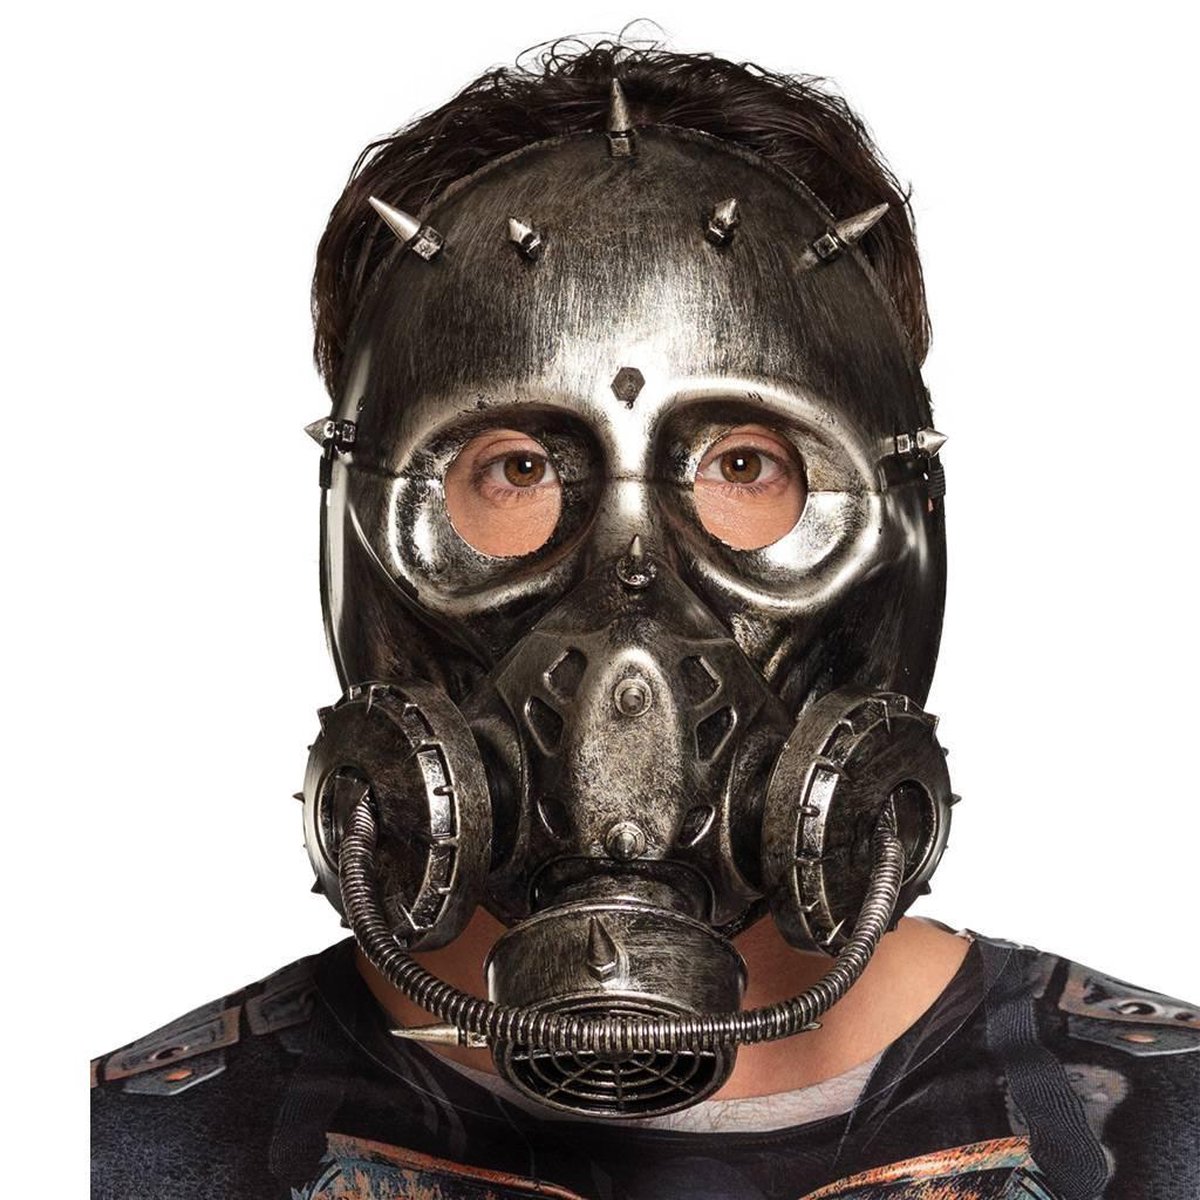 Masque à gaz Steampunk pour adultes - Masque de pansement | bol.com